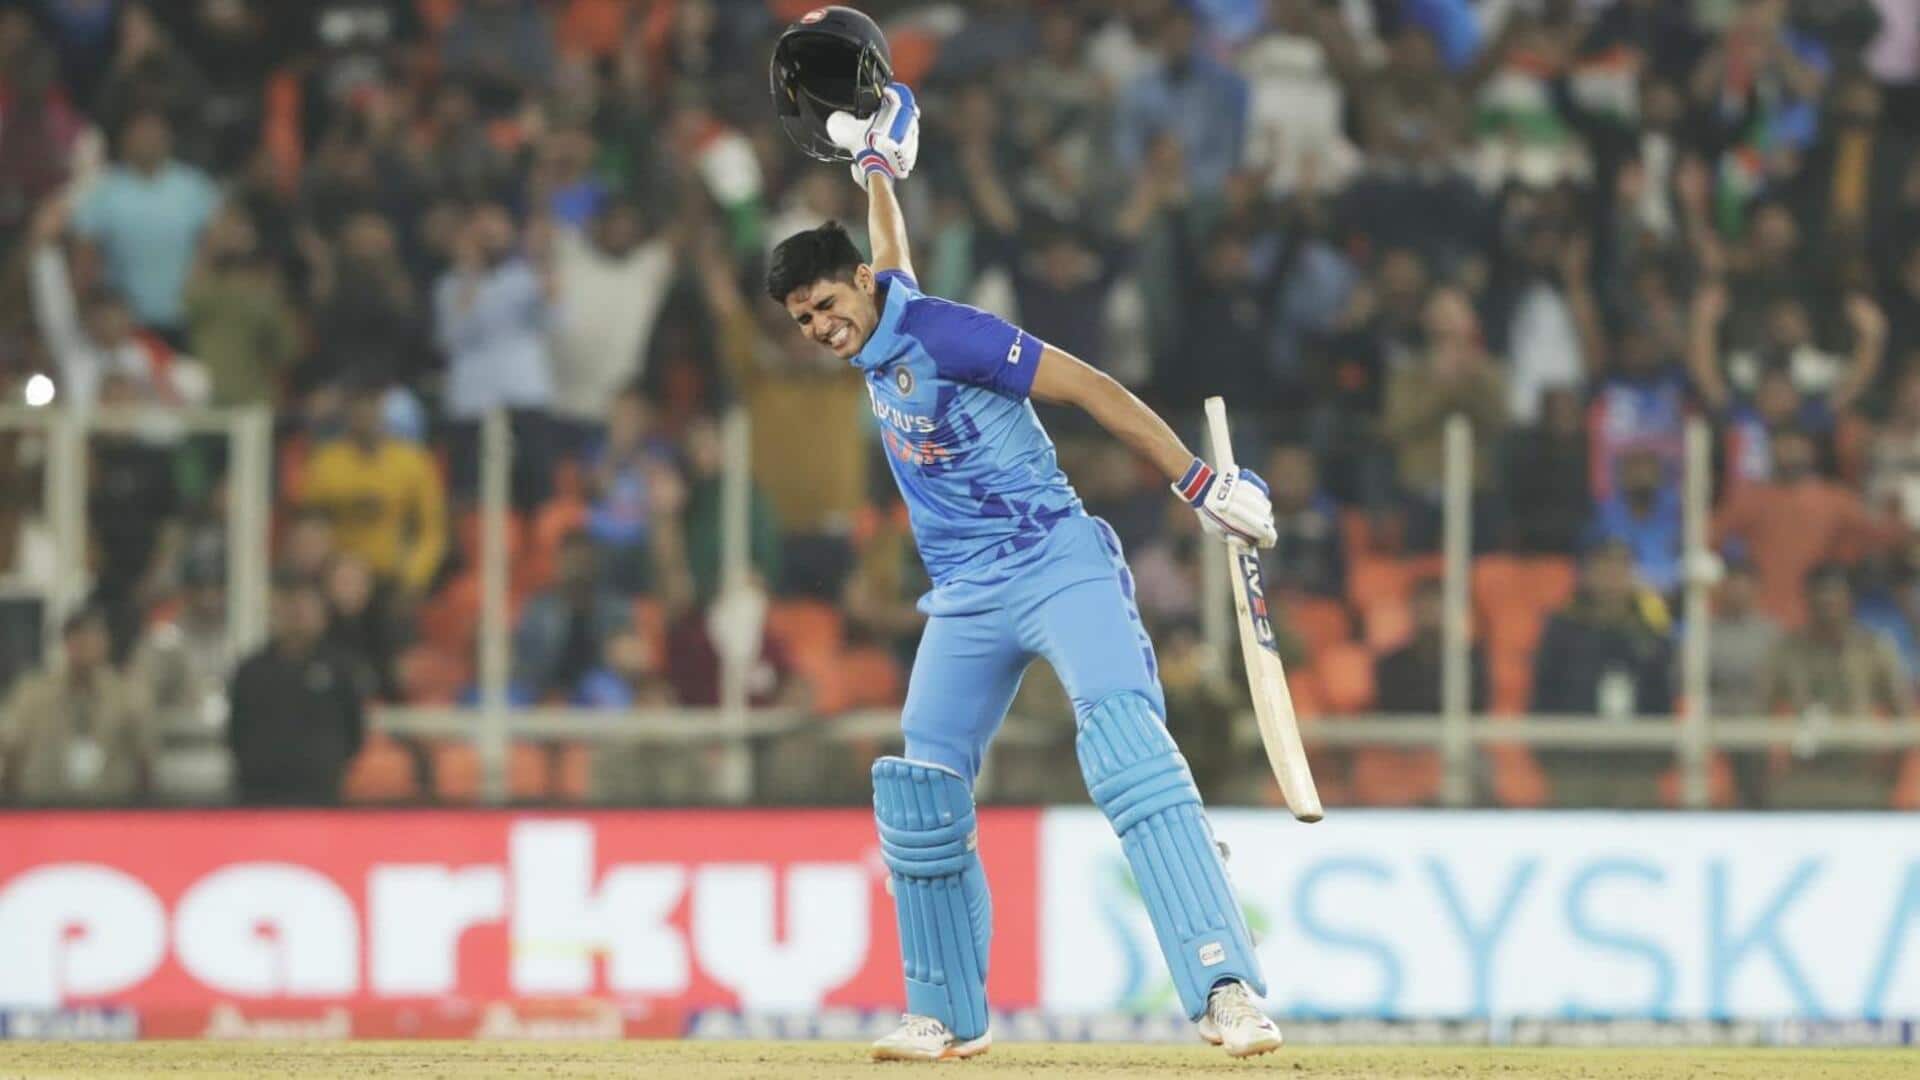 ICC प्लेयर ऑफ द मंथ: सितंबर महीने के लिए दो भारतीय खिलाड़ी हुए नामांकित 